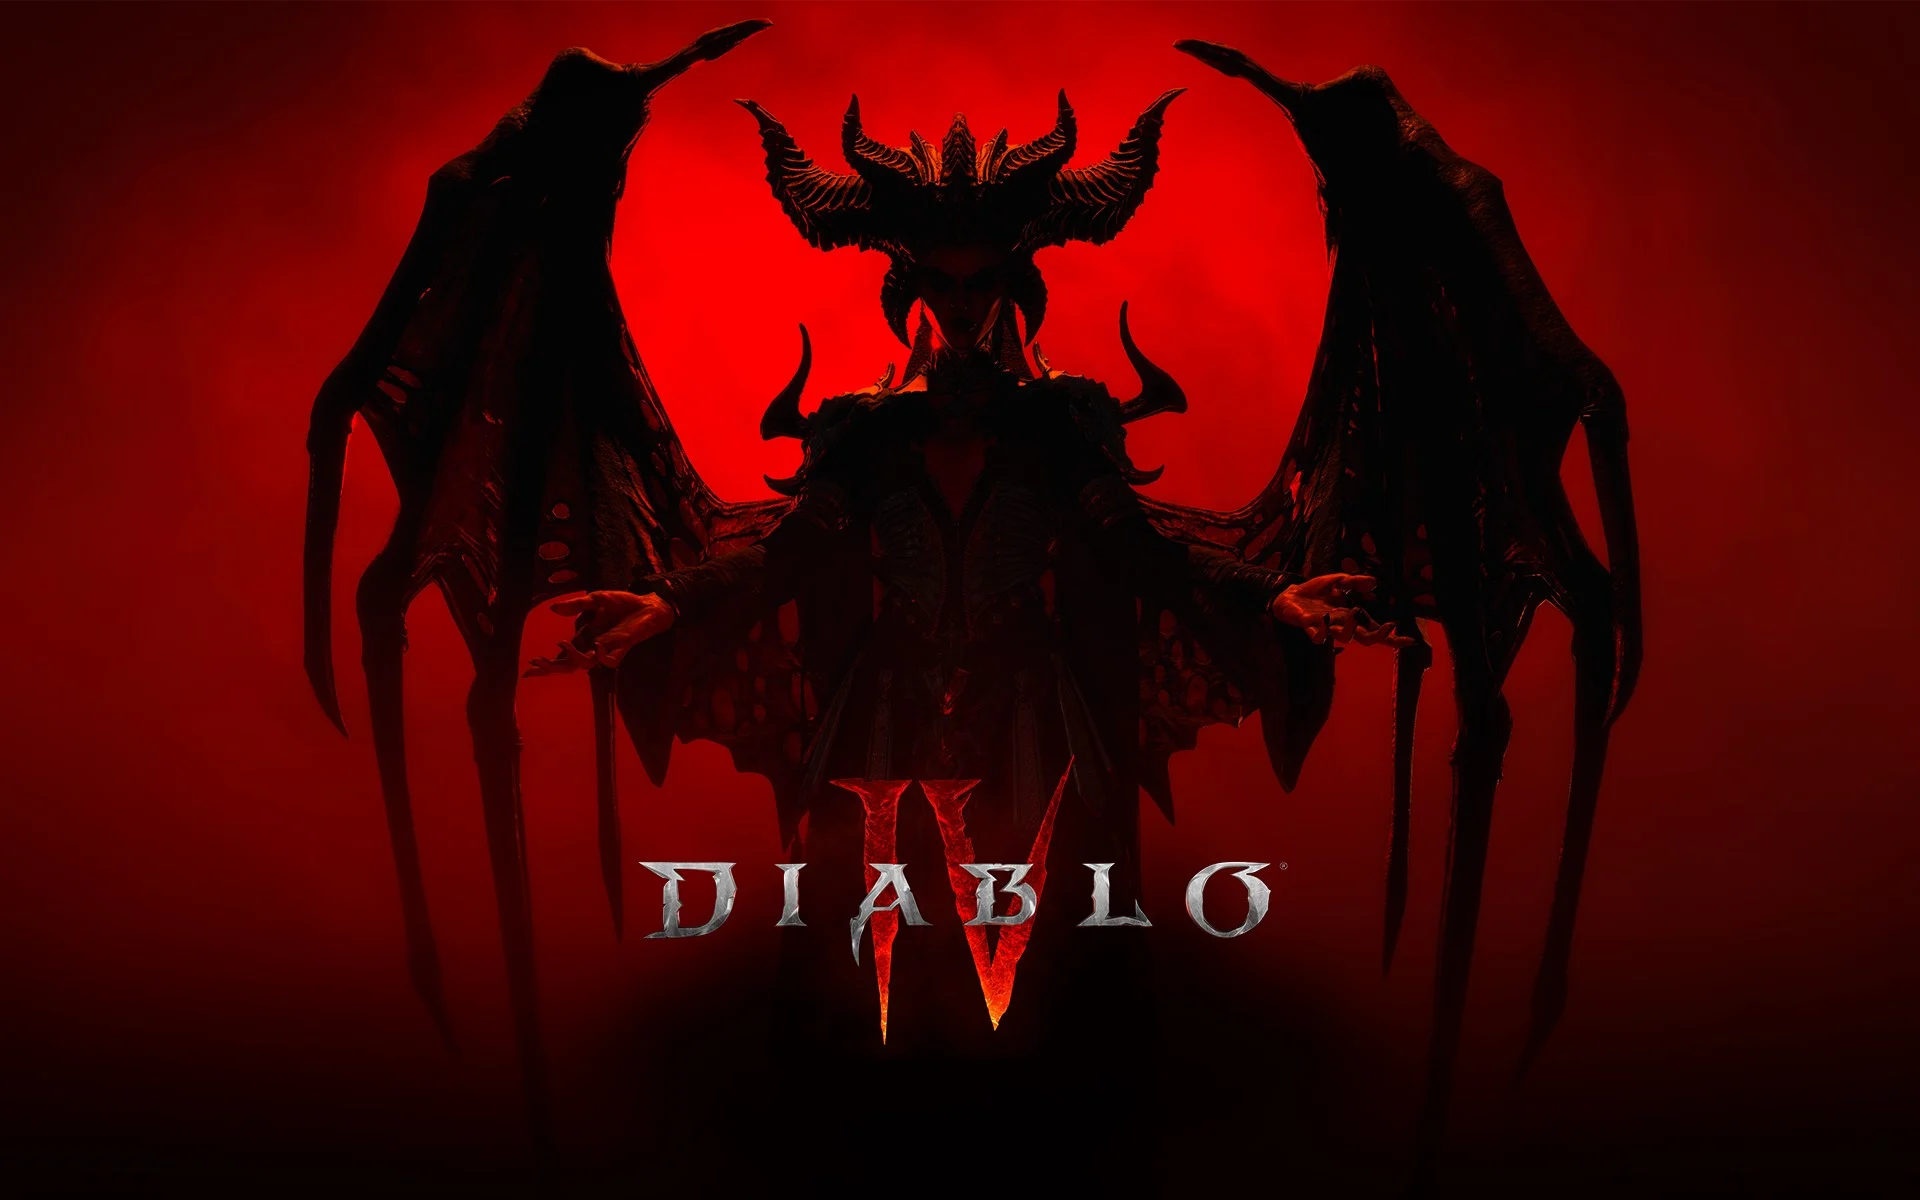 Diablo IV und World of Warcraft Crosspromo